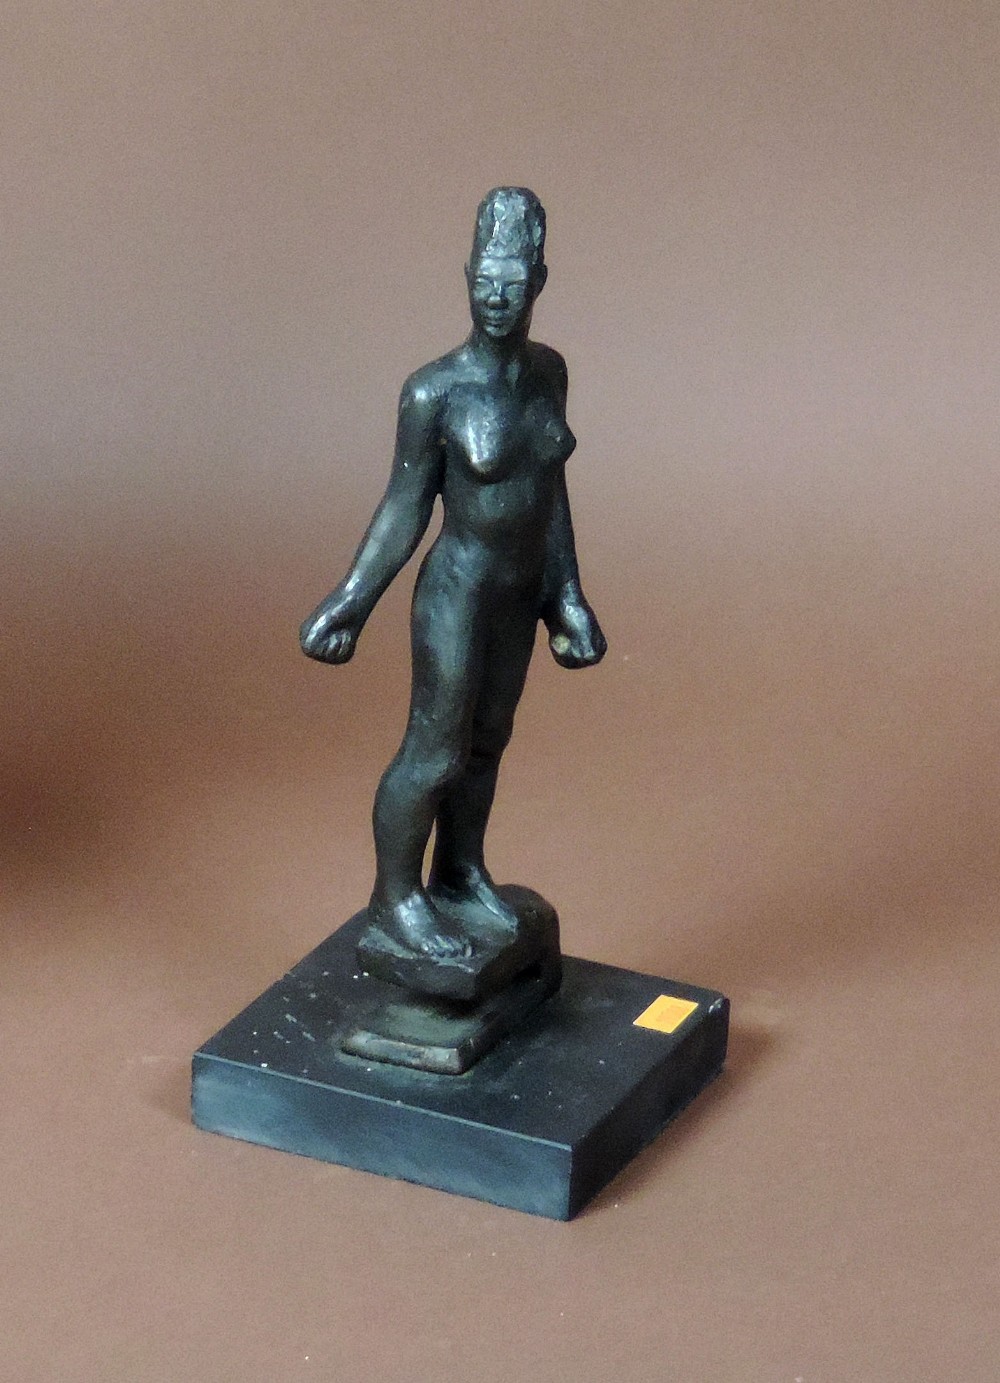 James Mc Kenna, Sculptor (1933 - 2000)

Bronze: "Figure from Citizen's Tree, 1966," One of an